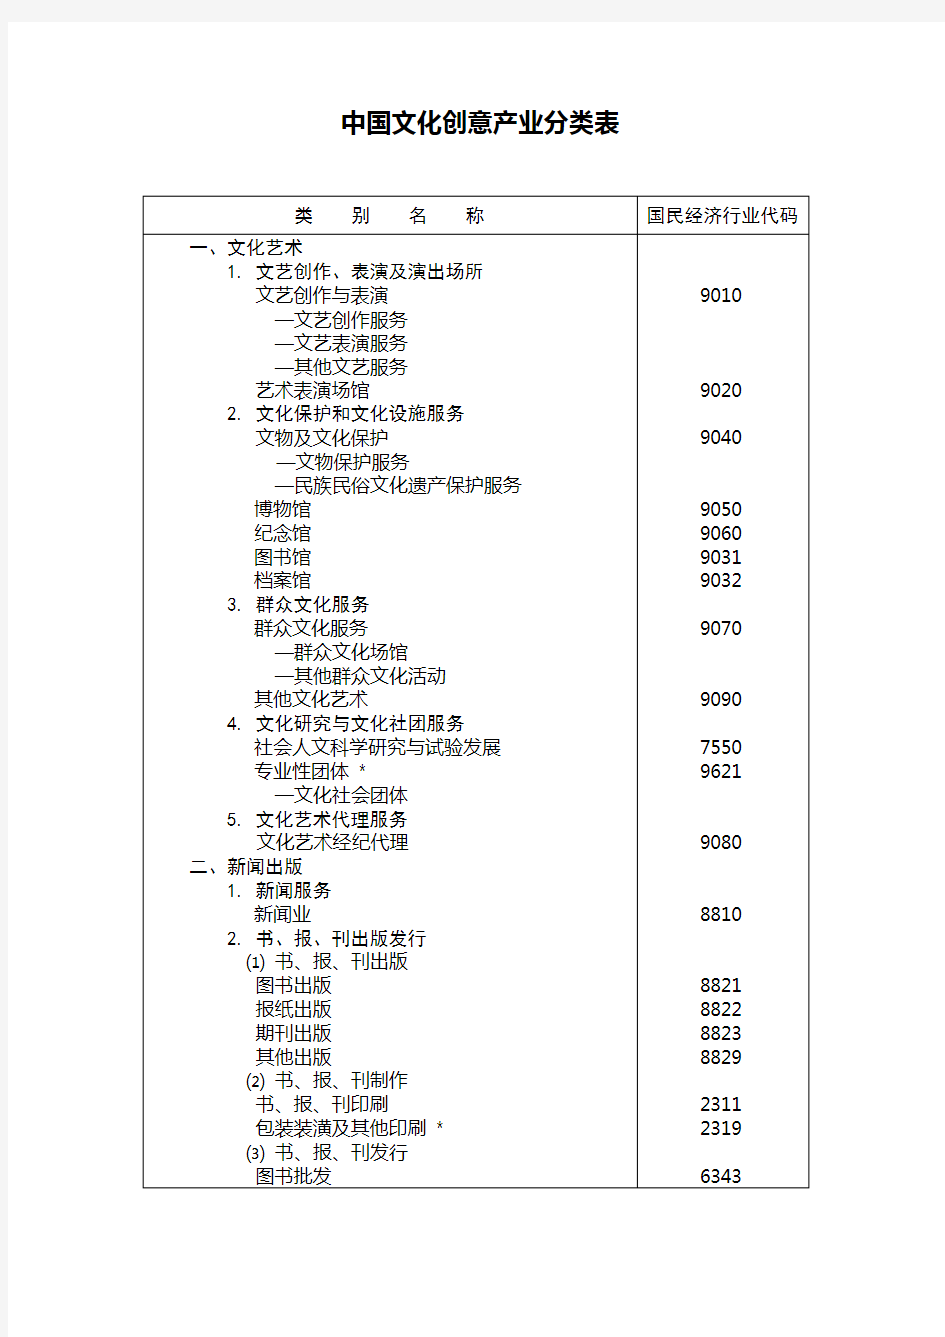 中国文化创意产业分类表